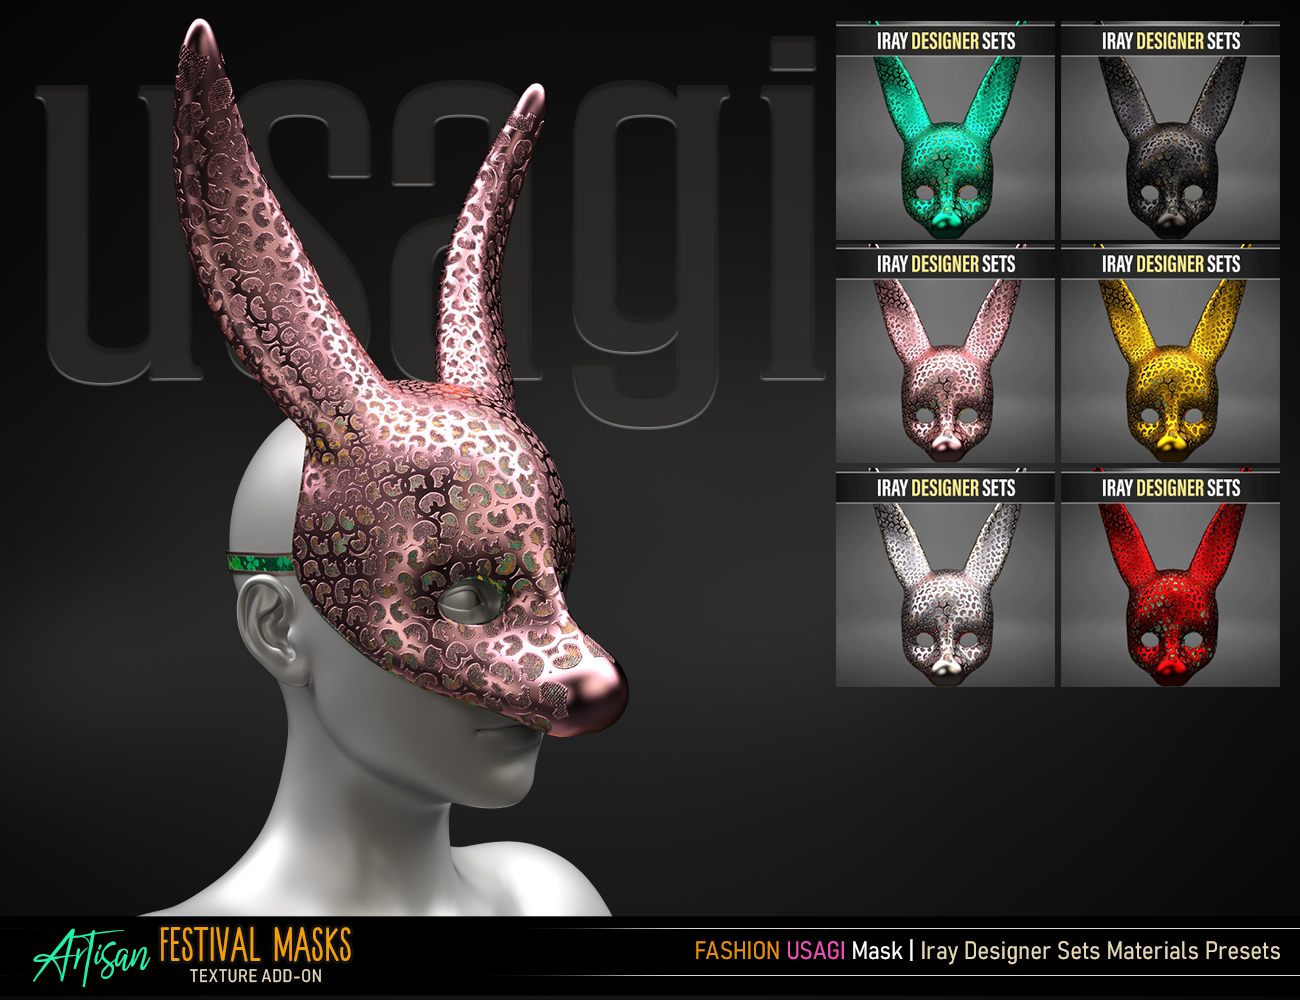 Artisan Festival Masks Add-On by: FenixPhoenixEsid, 3D Models by Daz 3D